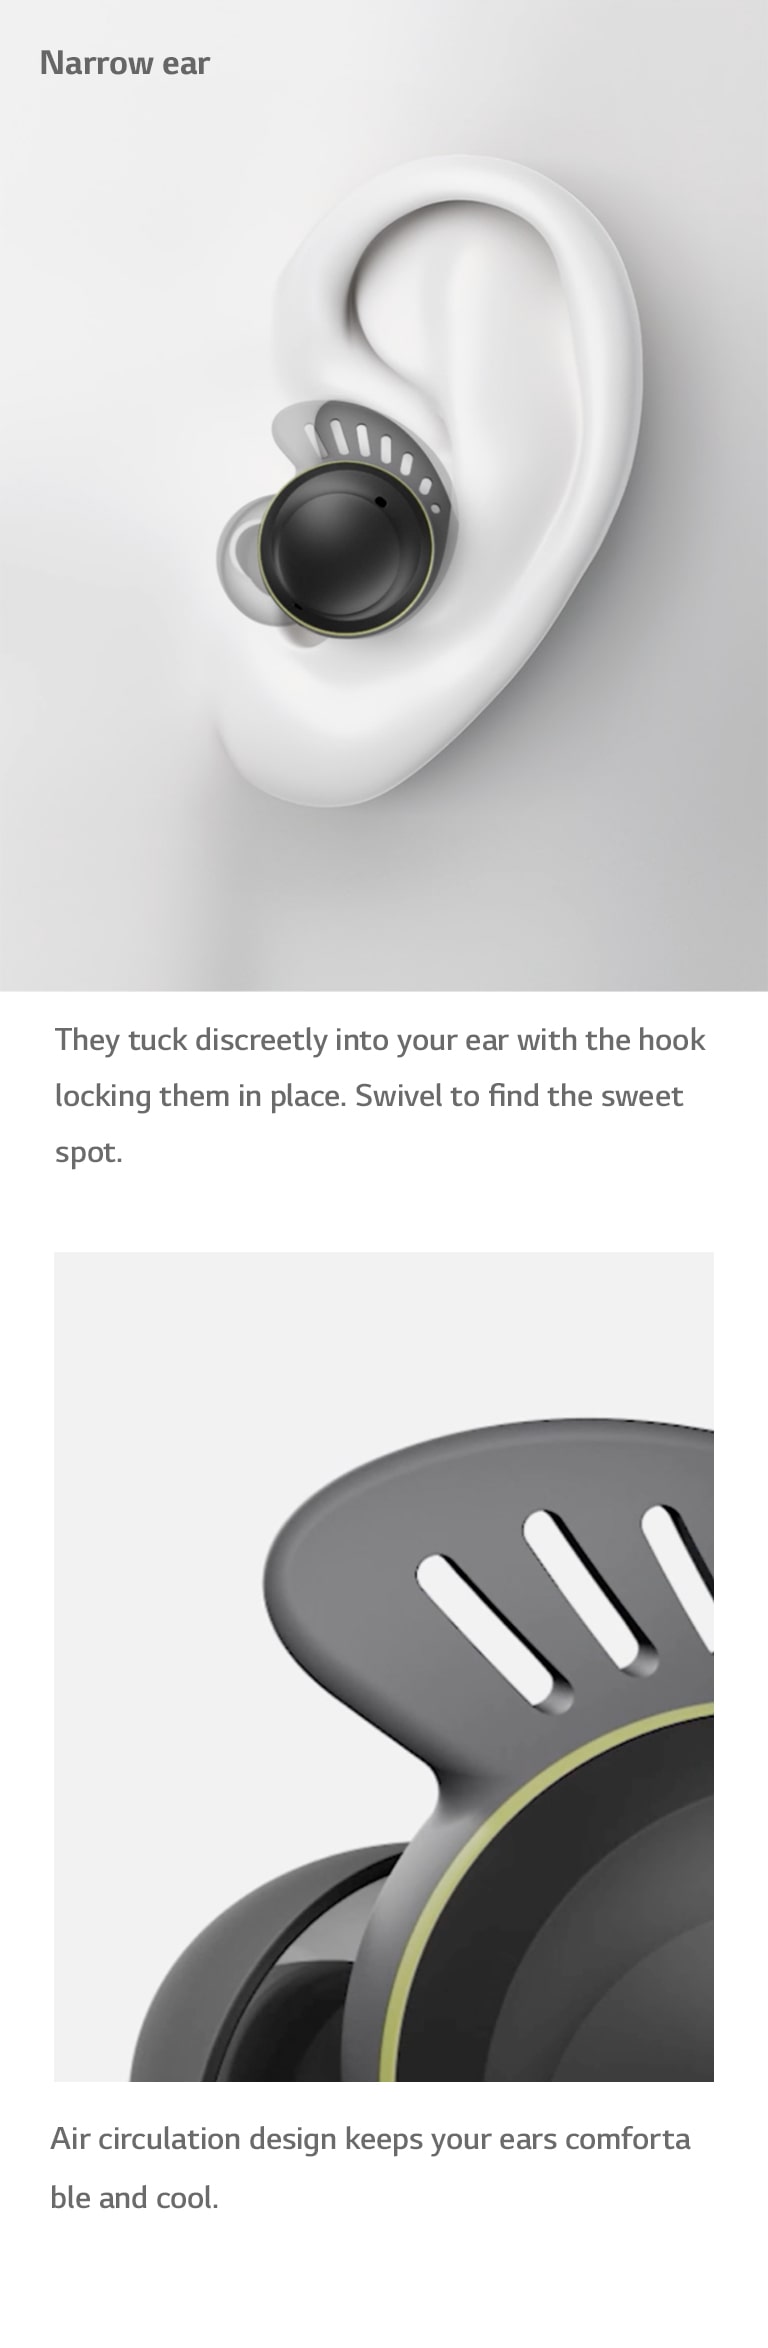 "La vidéo de gauche montre comment les écouteurs sont insérés dans des oreilles de taille moyenne, large ou étroite. La vidéo de droite montre la façon dont l’air circule à travers les trous du crochet auriculaire, pour une sensation agréable et rafraîchissante."